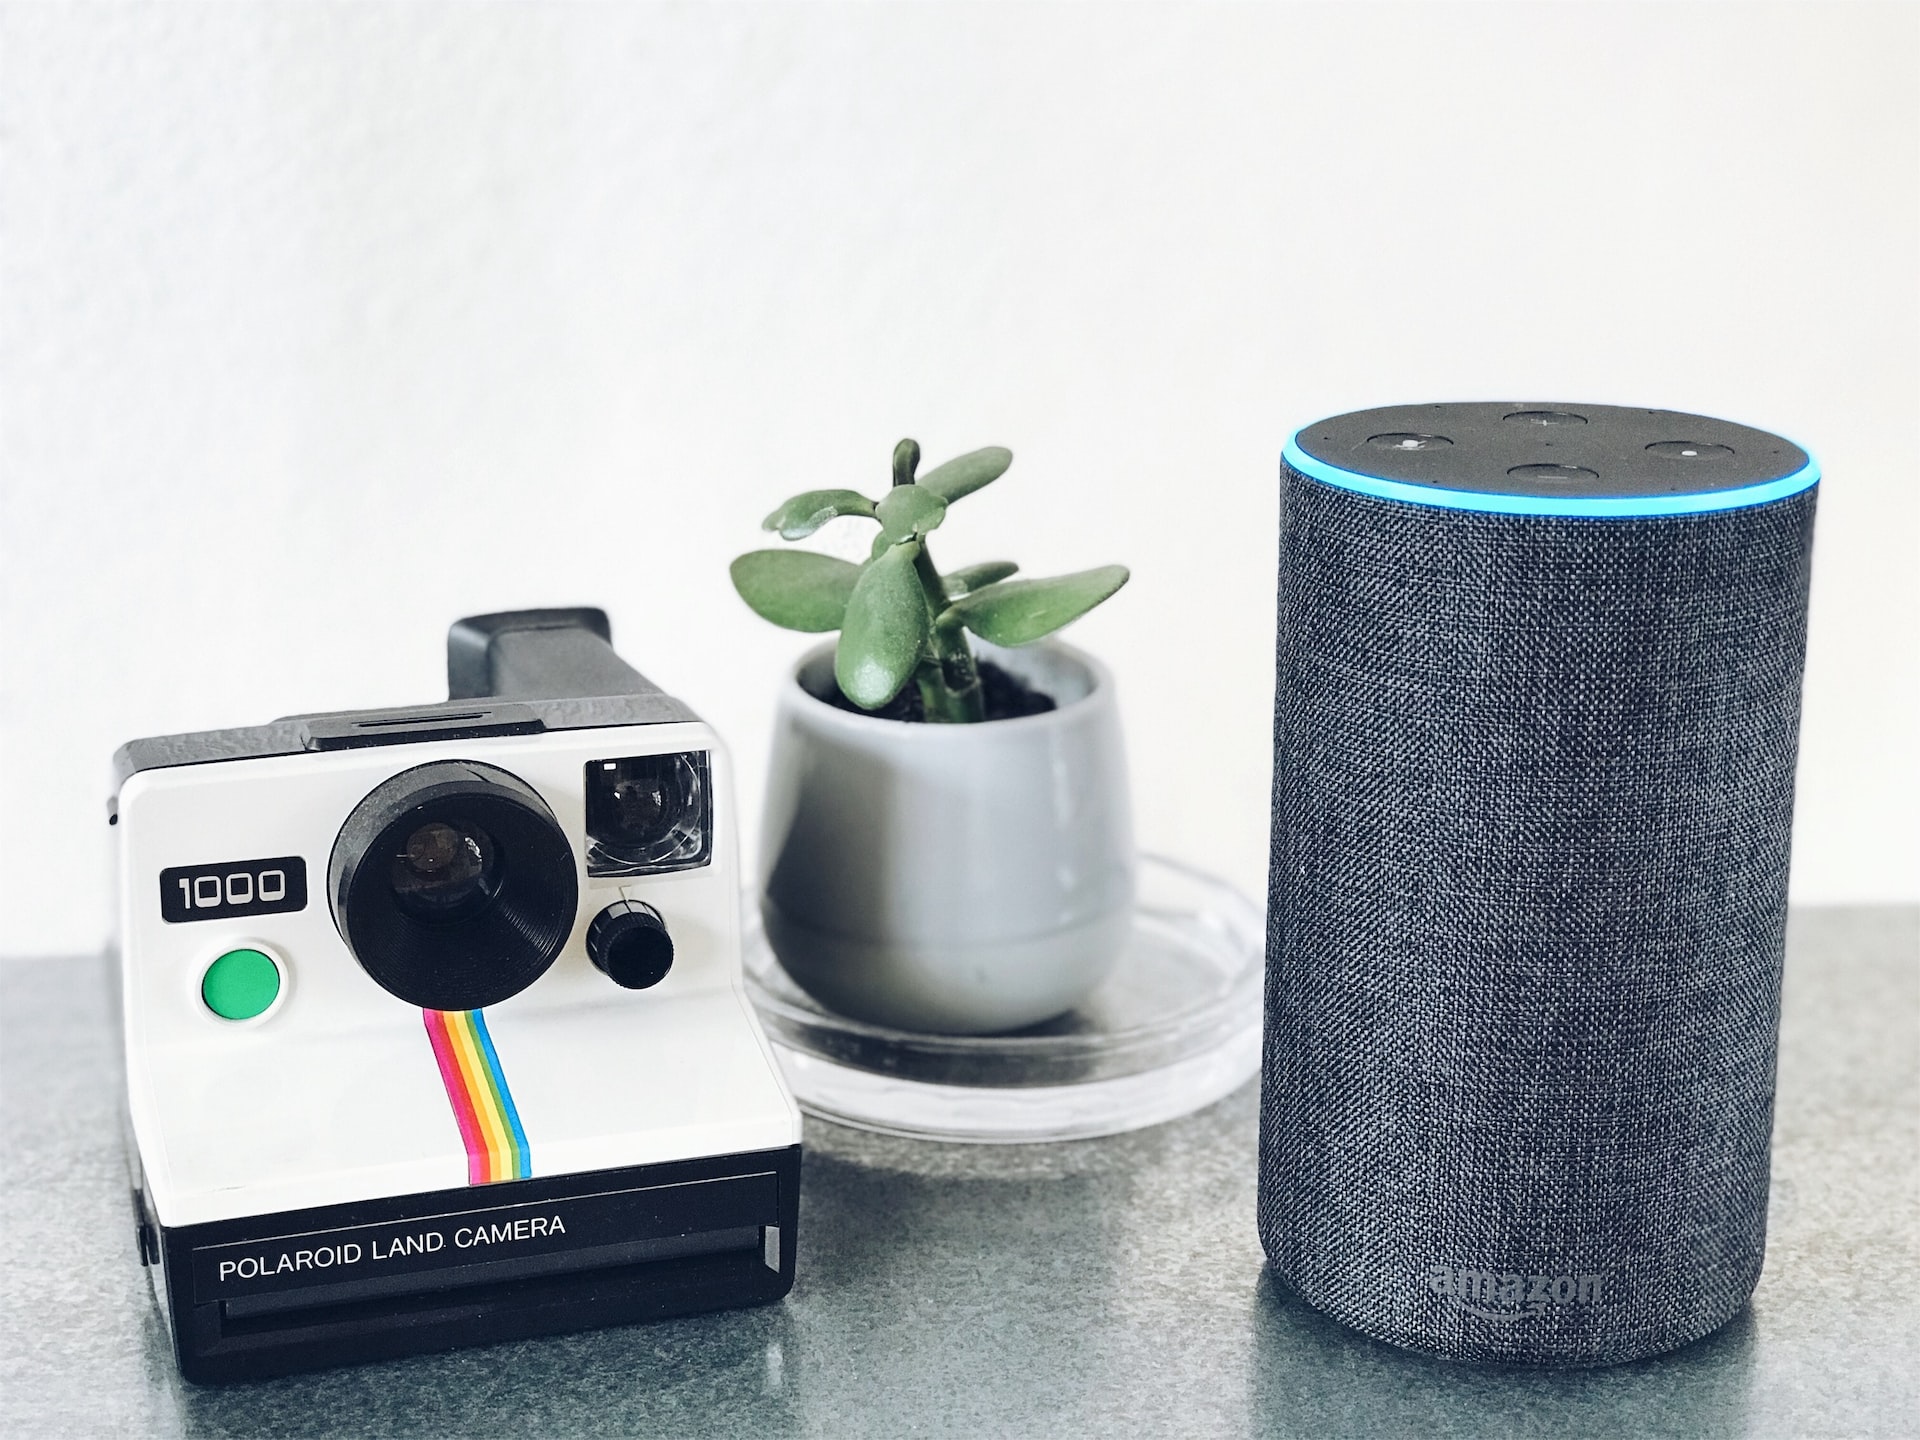 Alexa : Comment connecter sa maison avec l'assistant vocal